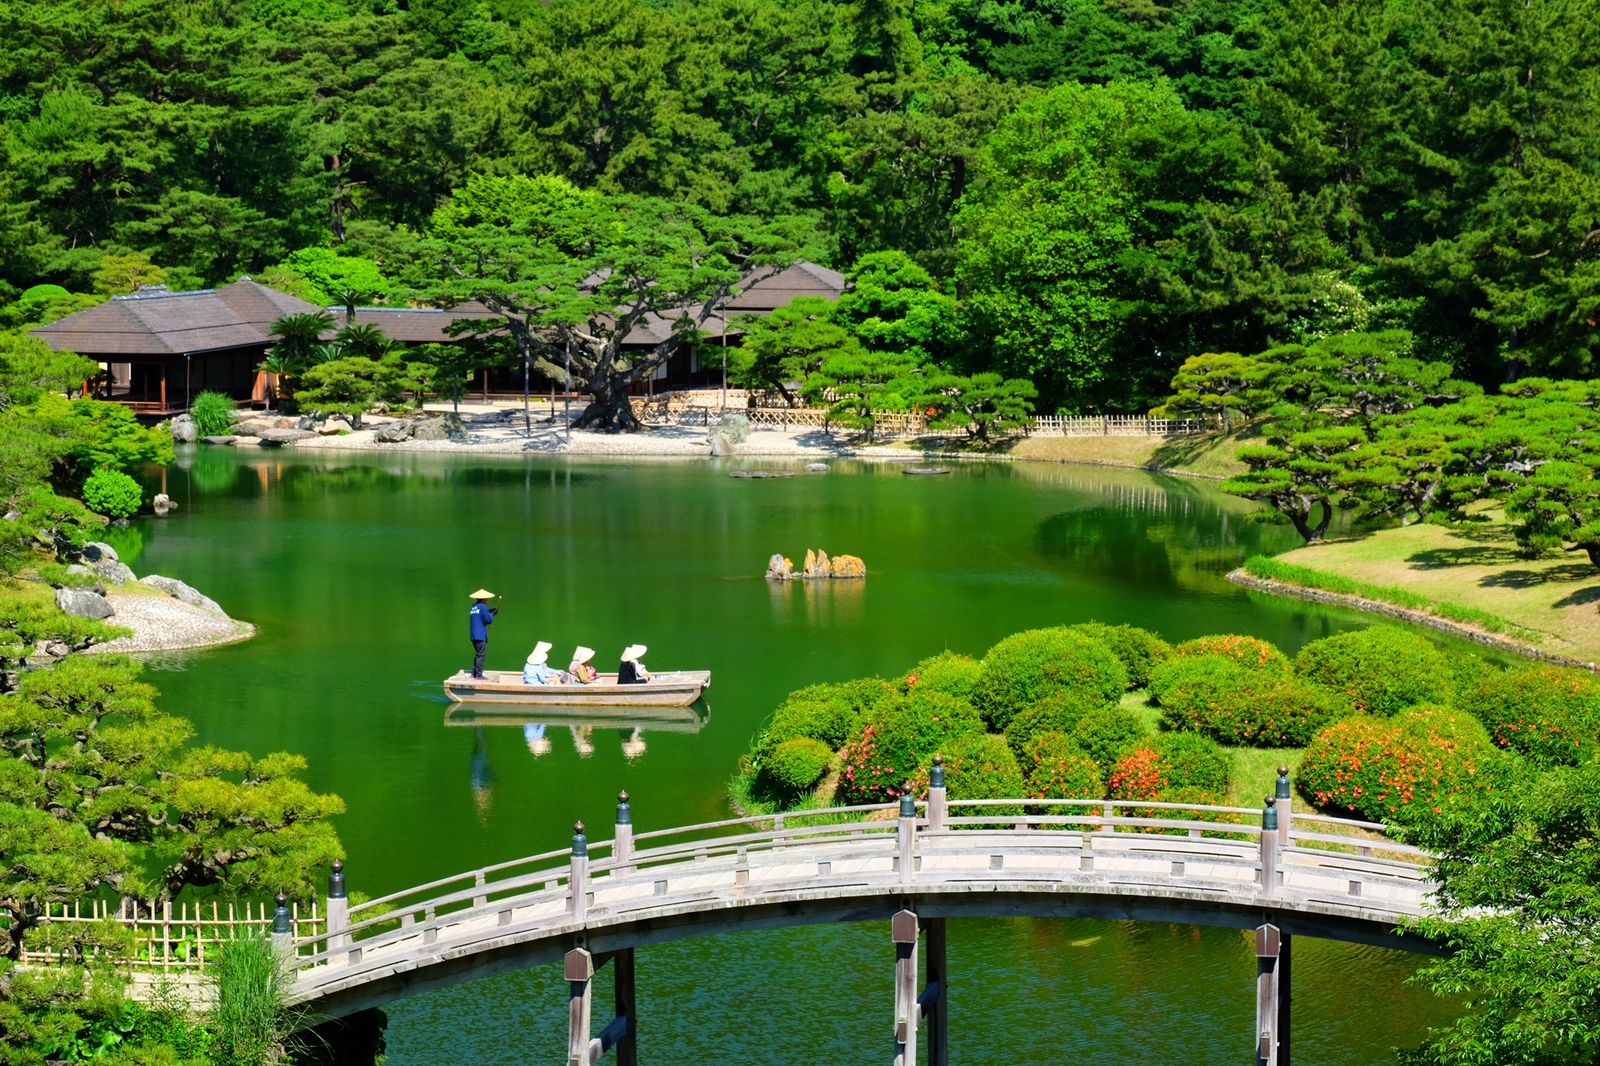 アメリカの庭園雑誌が選んだ 美しすぎる日本庭園ランキングtop Retrip リトリップ